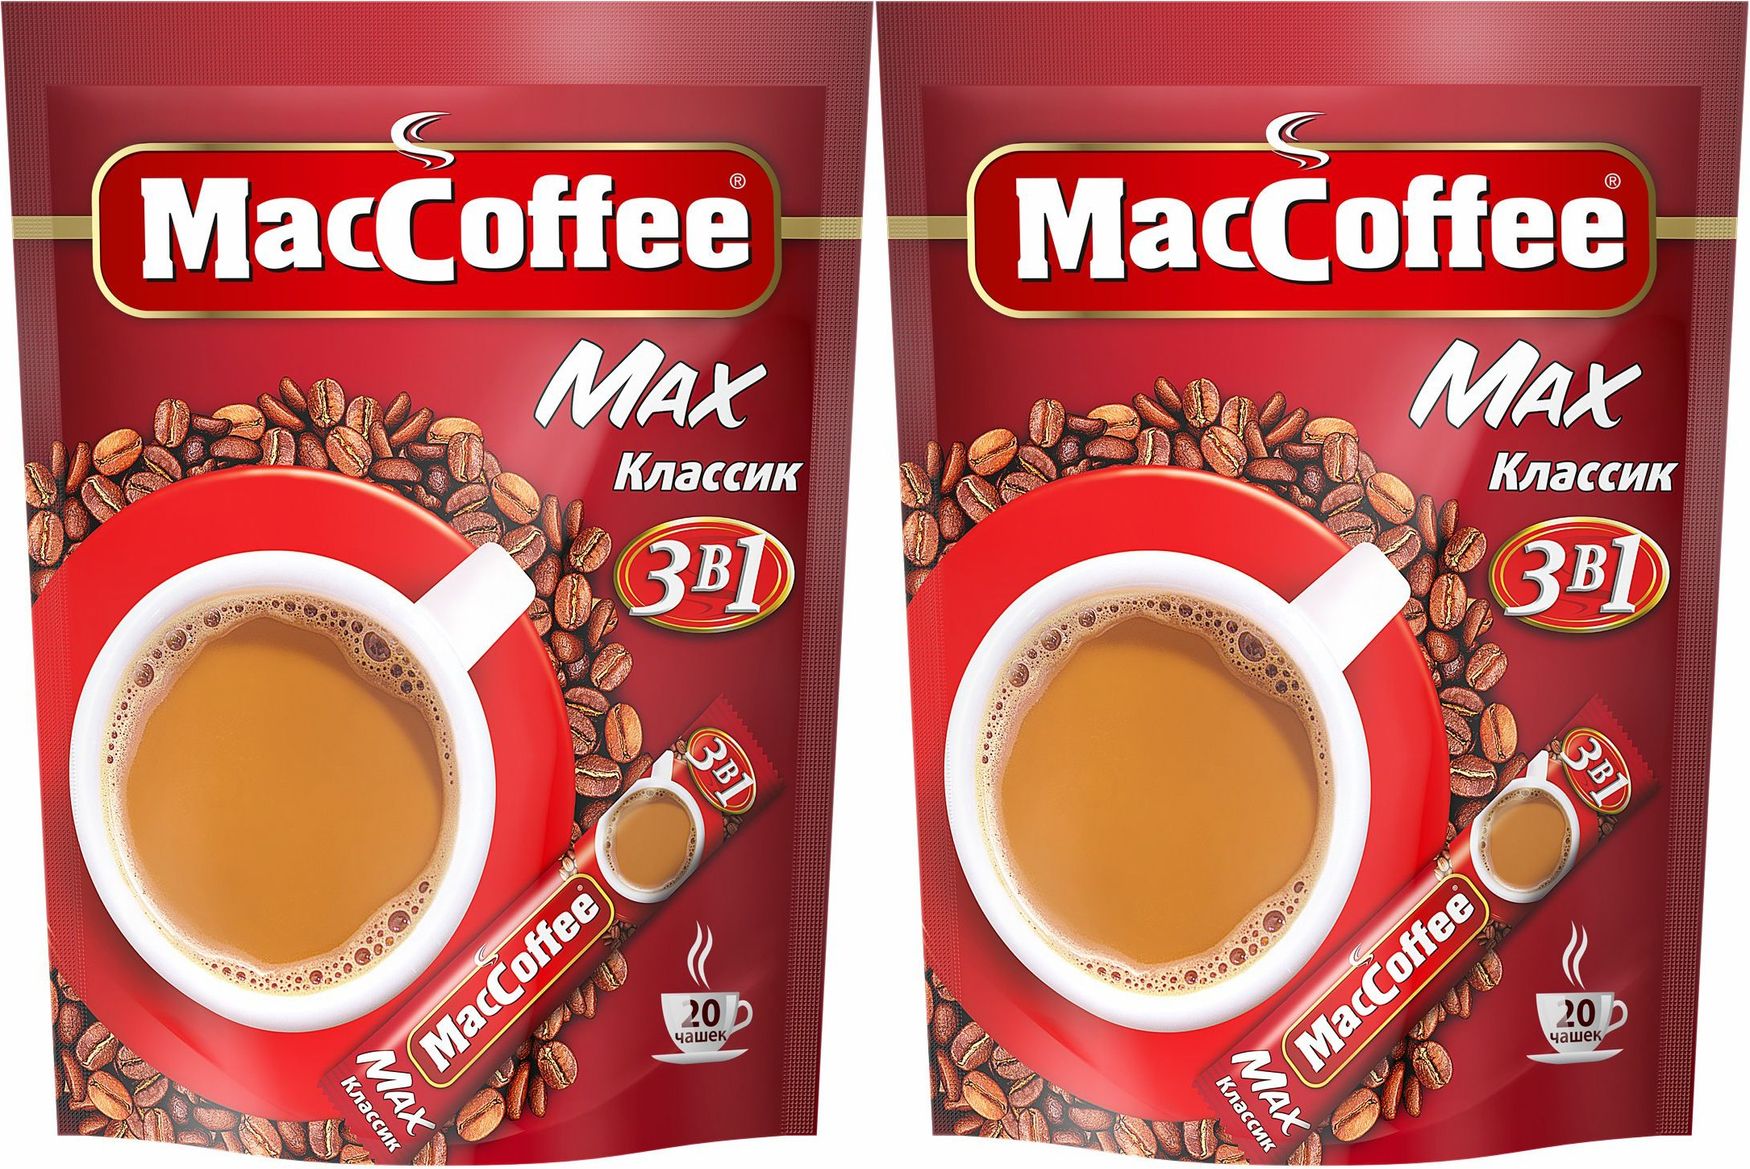 MACCOFFEE Max-Классик (3в1) кофейный напиток 16г*20*10. Кофе "MACCOFFEE" 3 В 1 (Классик) 16 г (20 шт). Маккофе 3 в 1 отзывы. Маккофе реклама. Маккофе отзывы